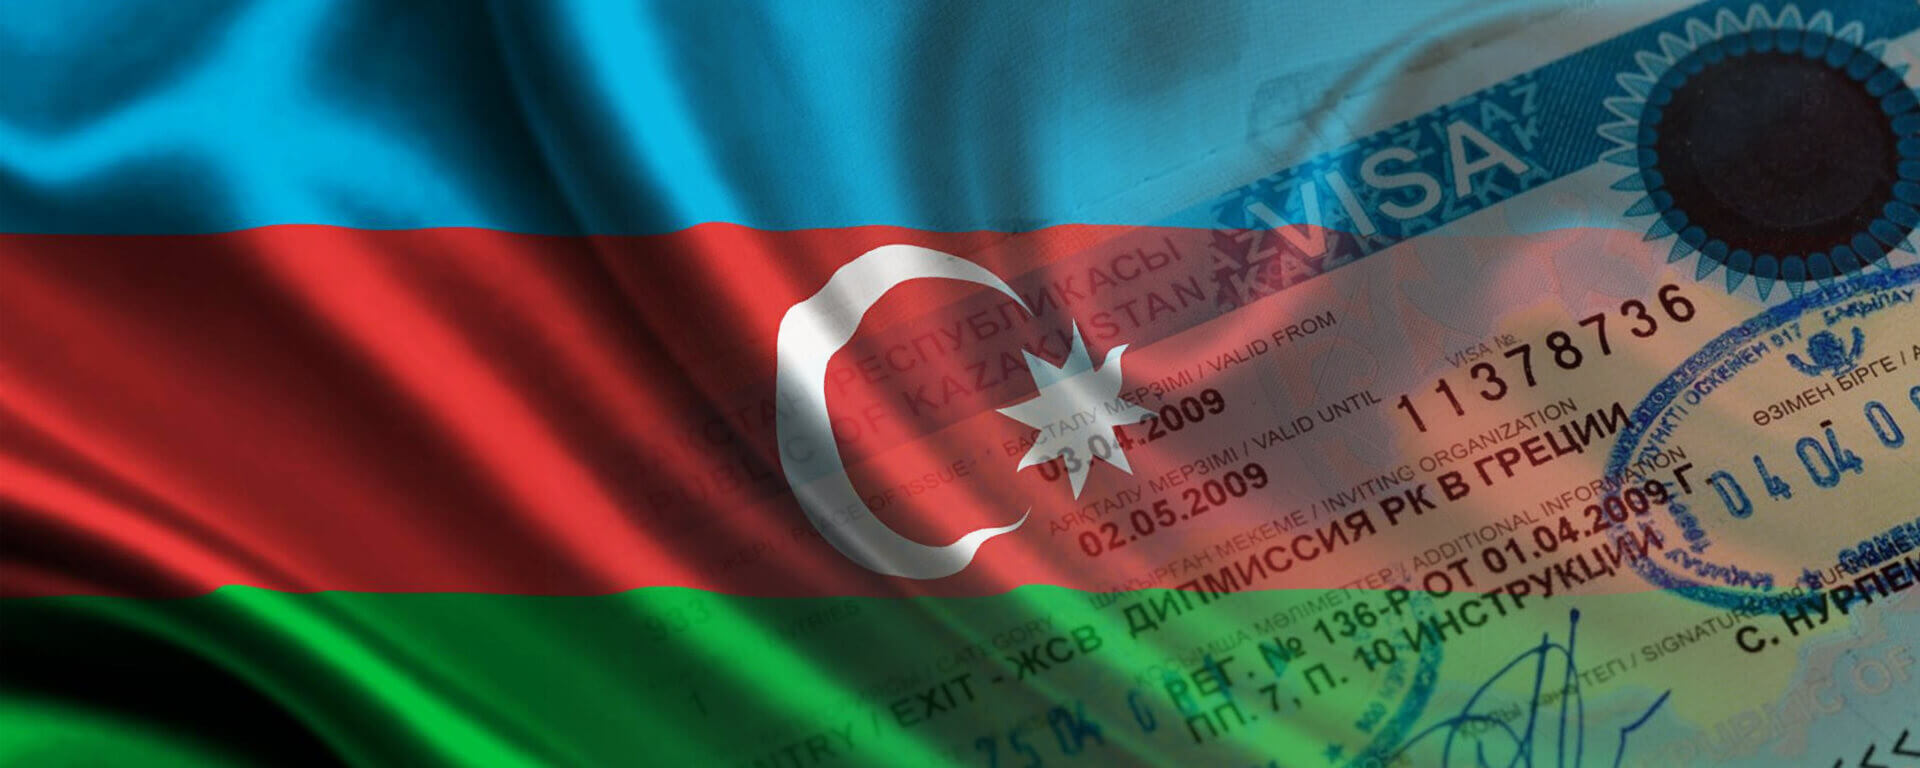 azerbaijan visit visa for indian